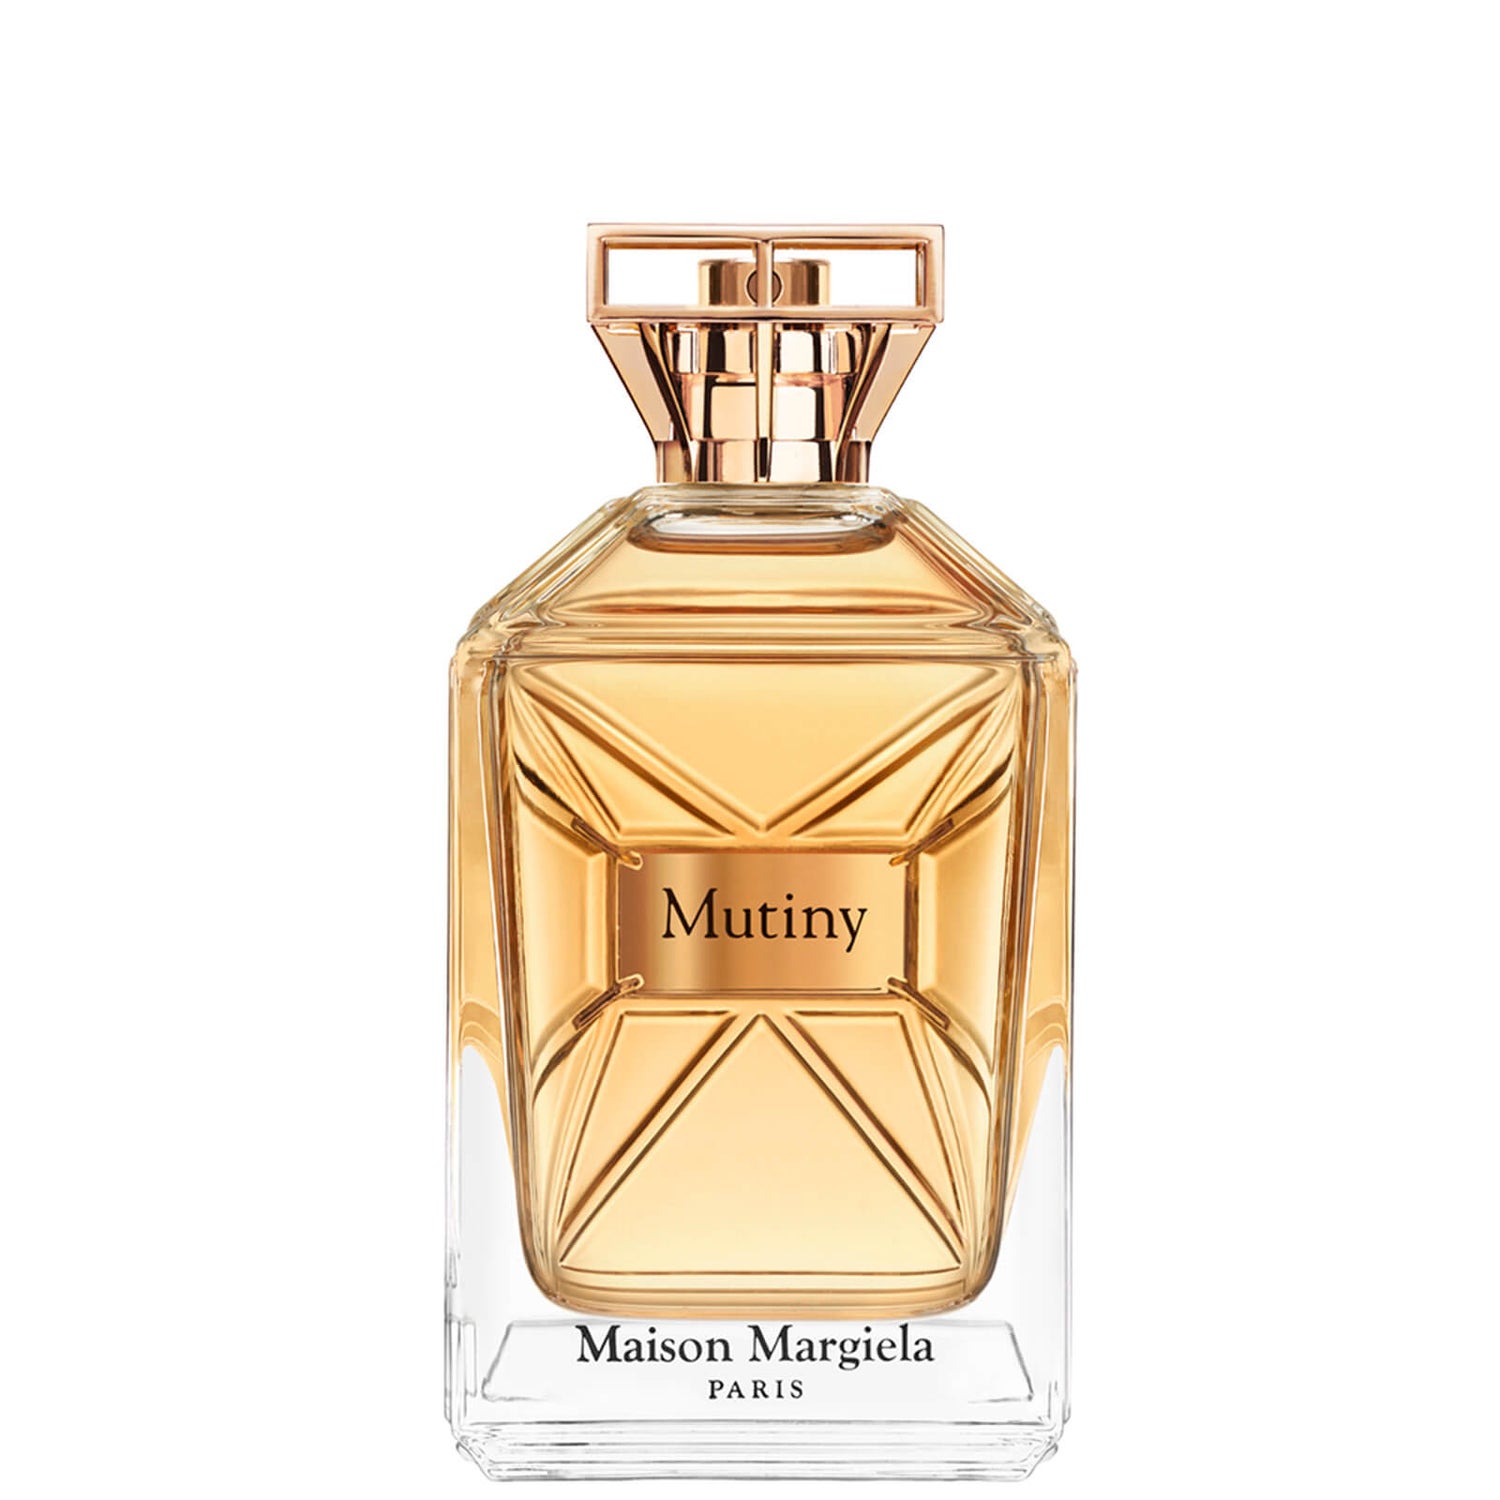 Maison Margiela Mutiny Eau de Parfum - 50ml